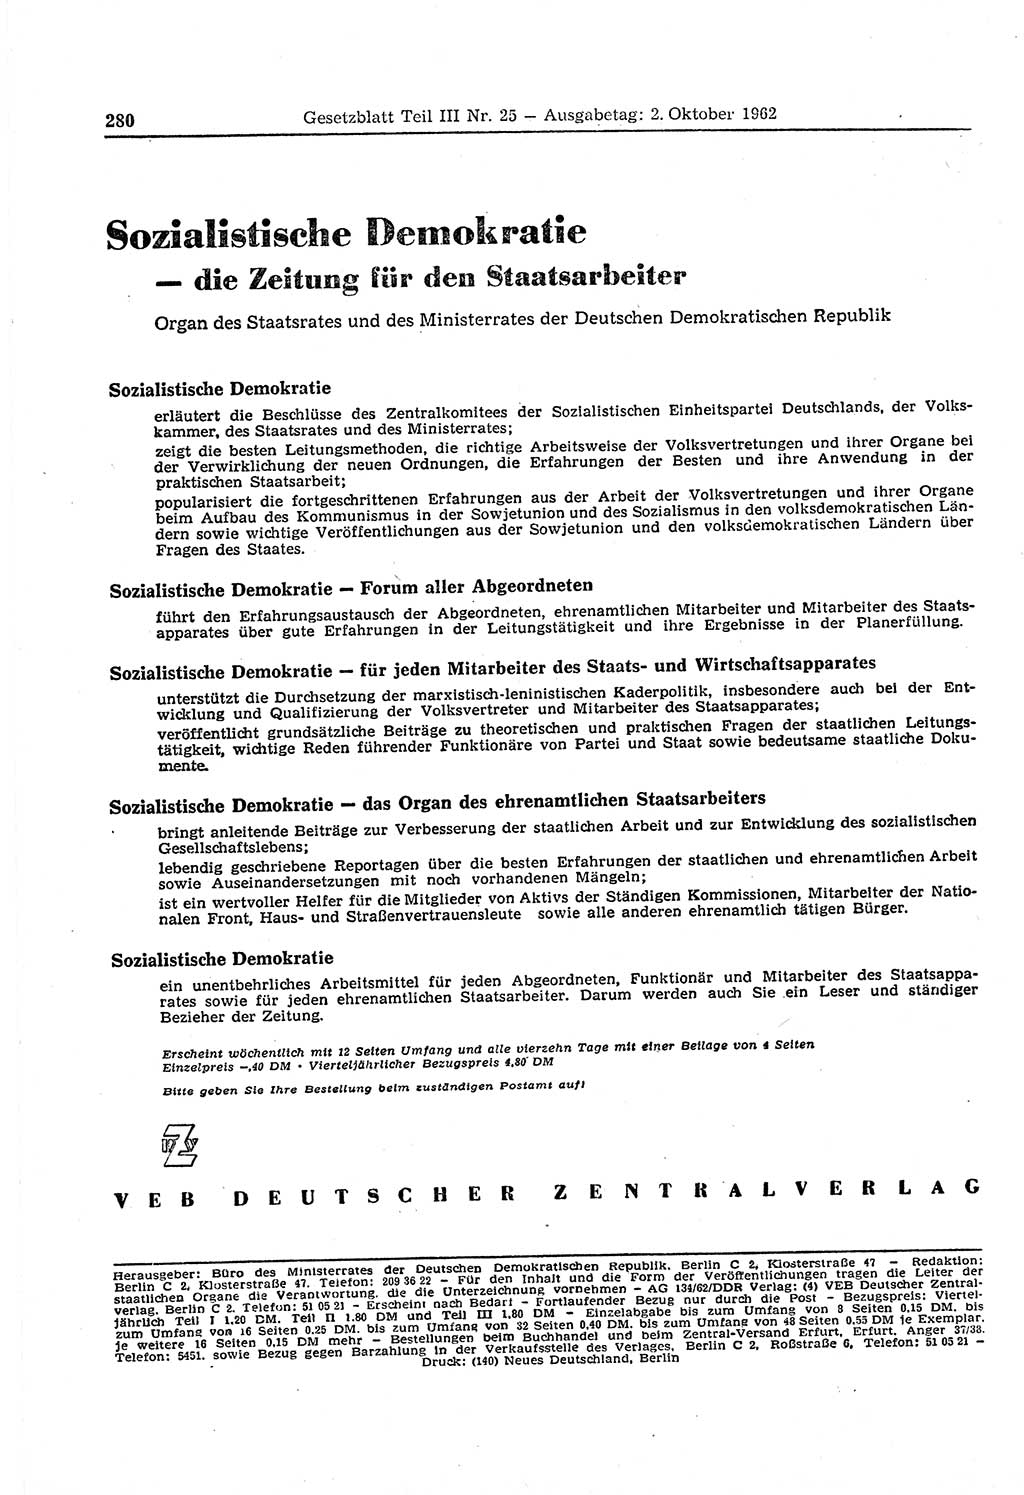 Gesetzblatt (GBl.) der Deutschen Demokratischen Republik (DDR) Teil ⅠⅠⅠ 1962, Seite 280 (GBl. DDR ⅠⅠⅠ 1962, S. 280)